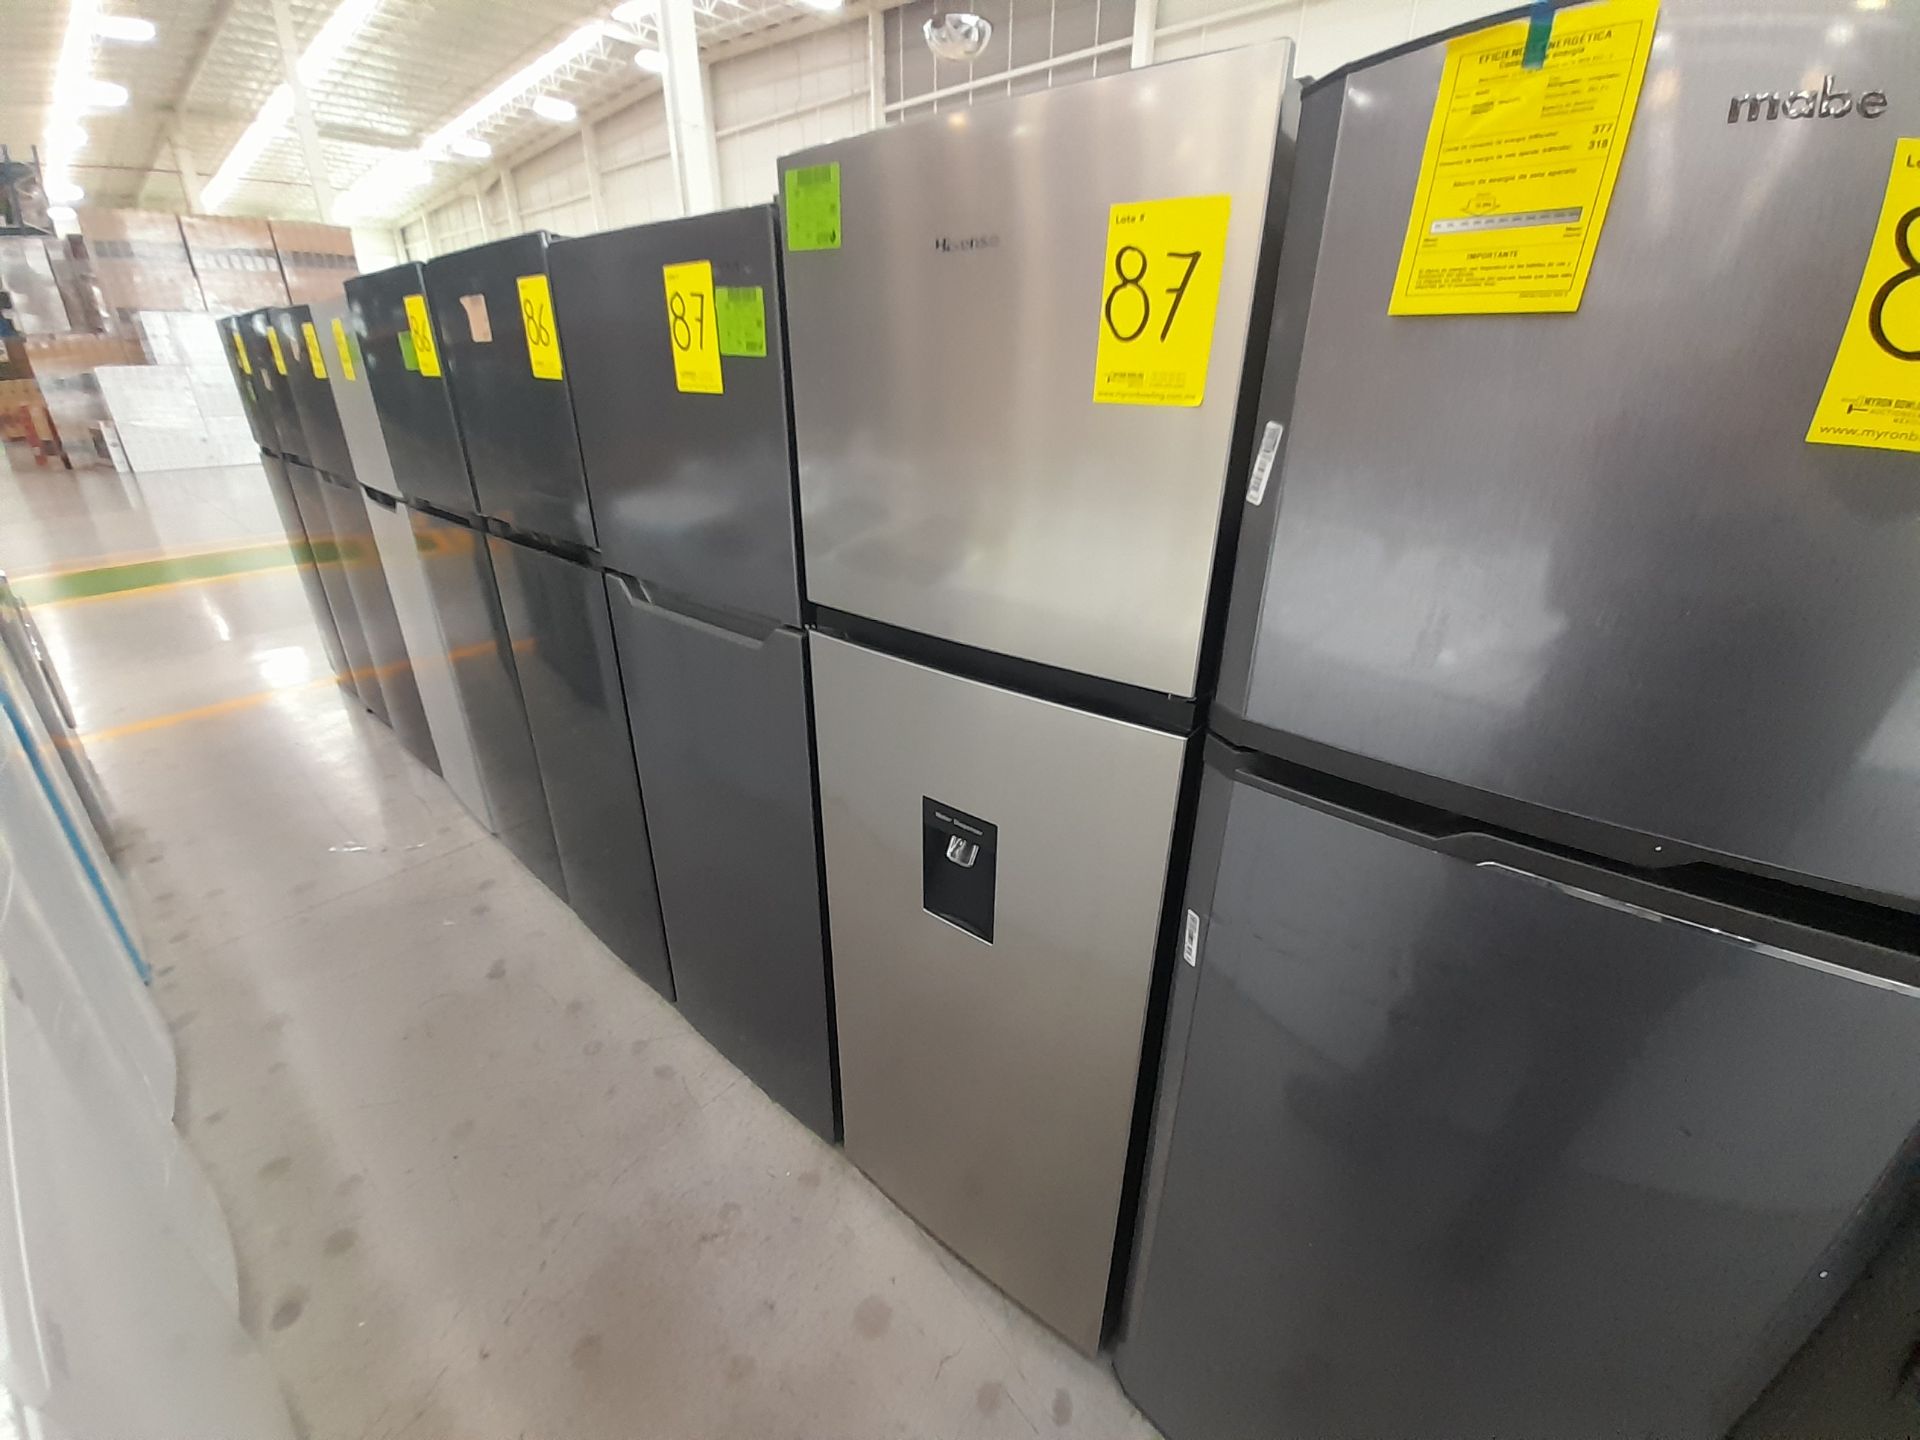 Lote de 2 refrigeradores contiene: 1 Refrigerador Marca WINIA, Modelo WRT9000AMMX, Color GRIS; - Image 3 of 8